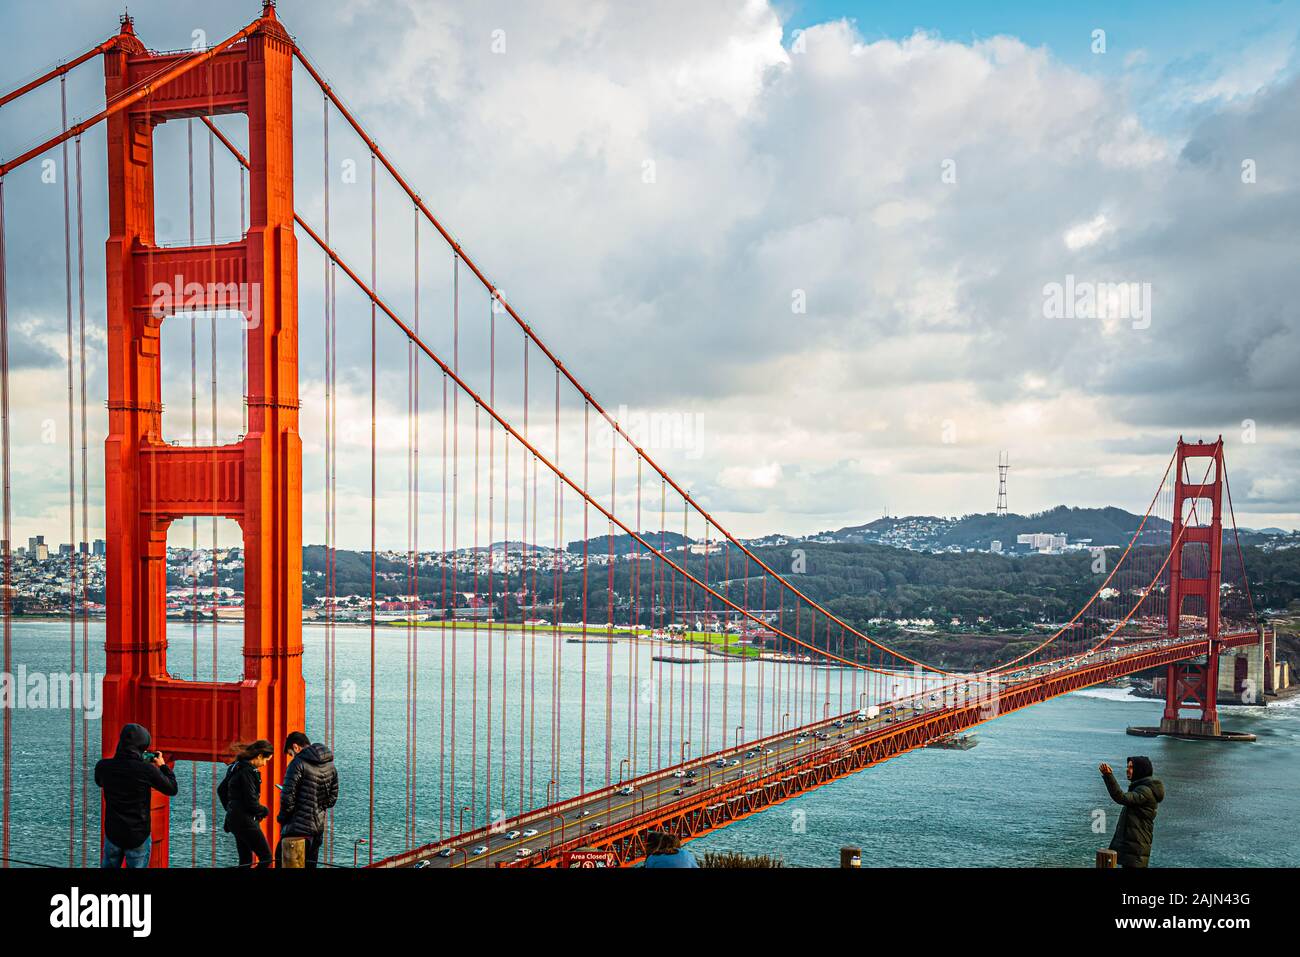 SAN FRANCISCO, USA - 27 nov., 2019 : touristes prenant des photos du Golden Gate Bridge, San Francisco CA USA Banque D'Images